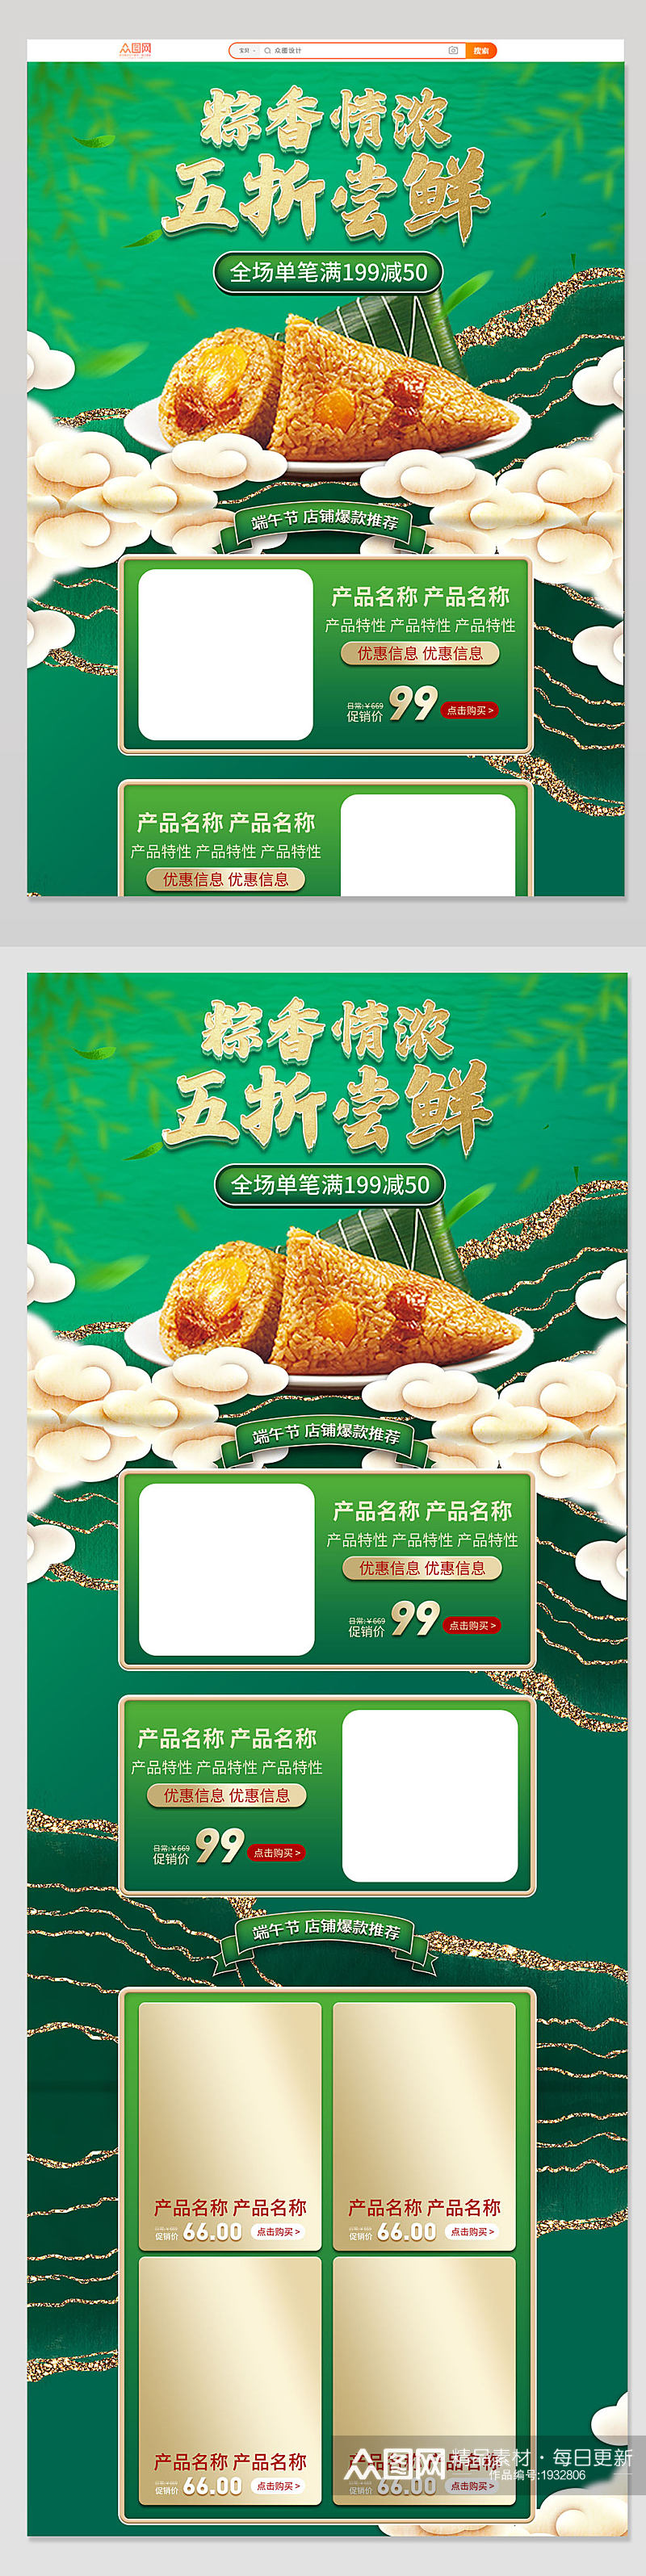 电商淘宝端午节粽子食品促销首页素材